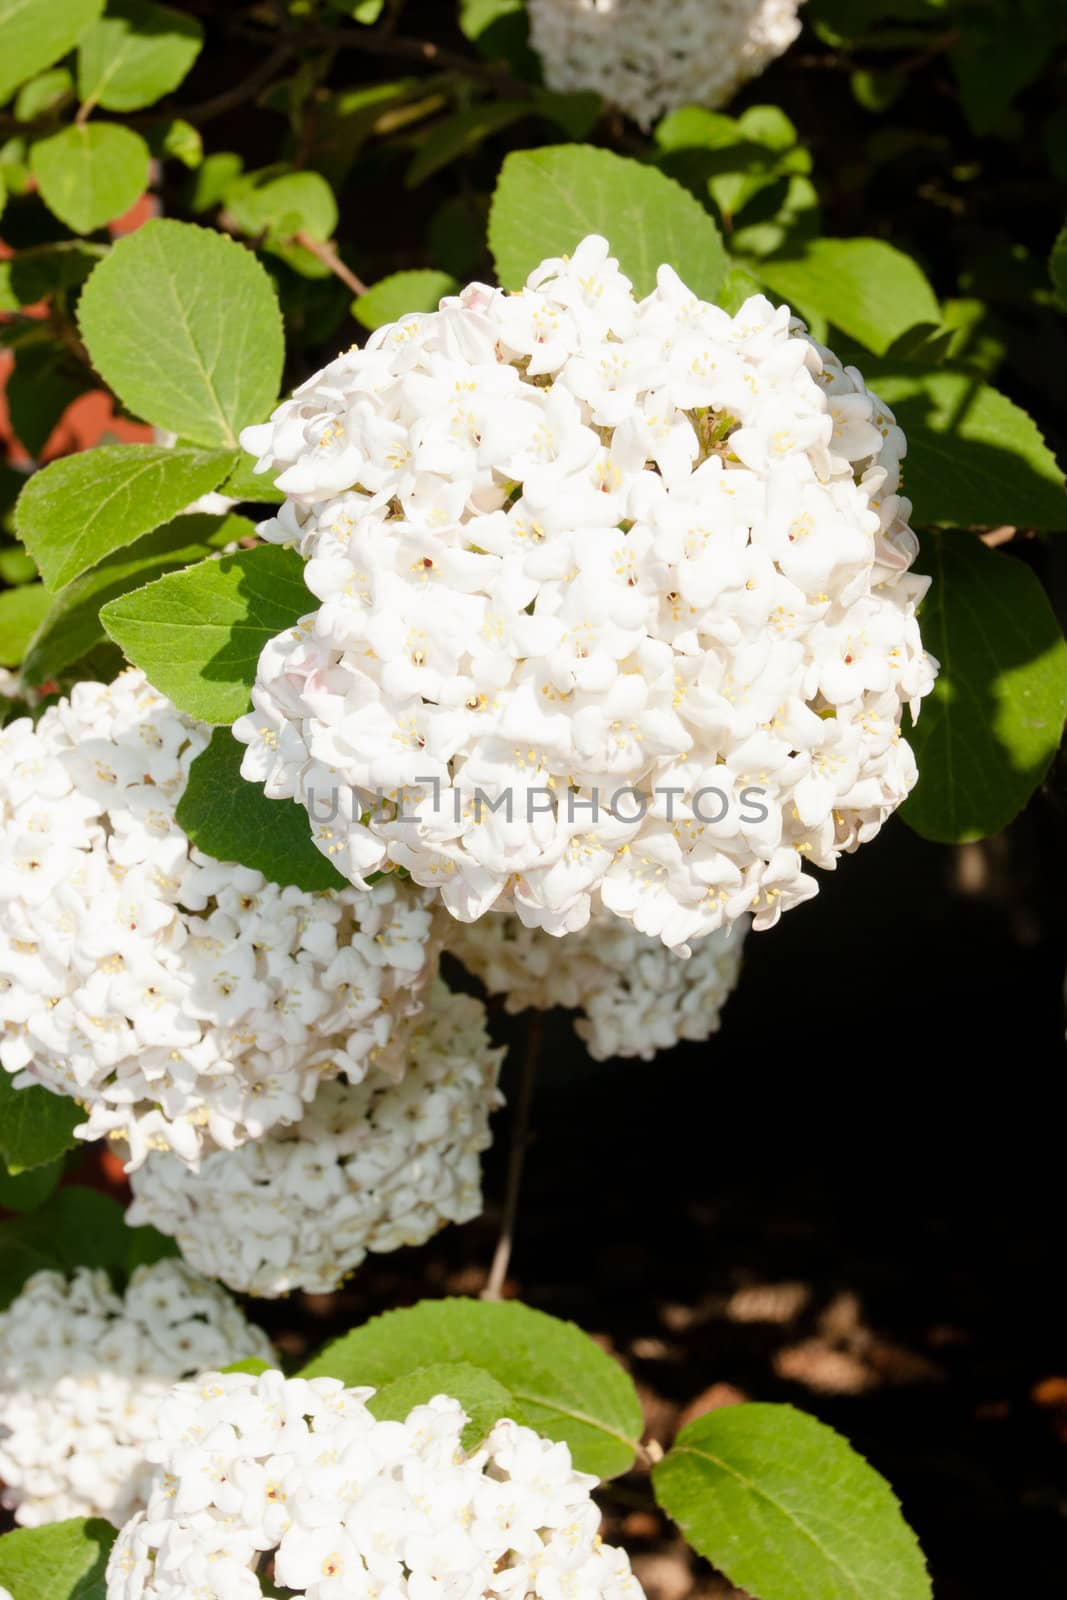 Korean spice viburnum (Viburnum carlesii) is deciduous flowering shrub.